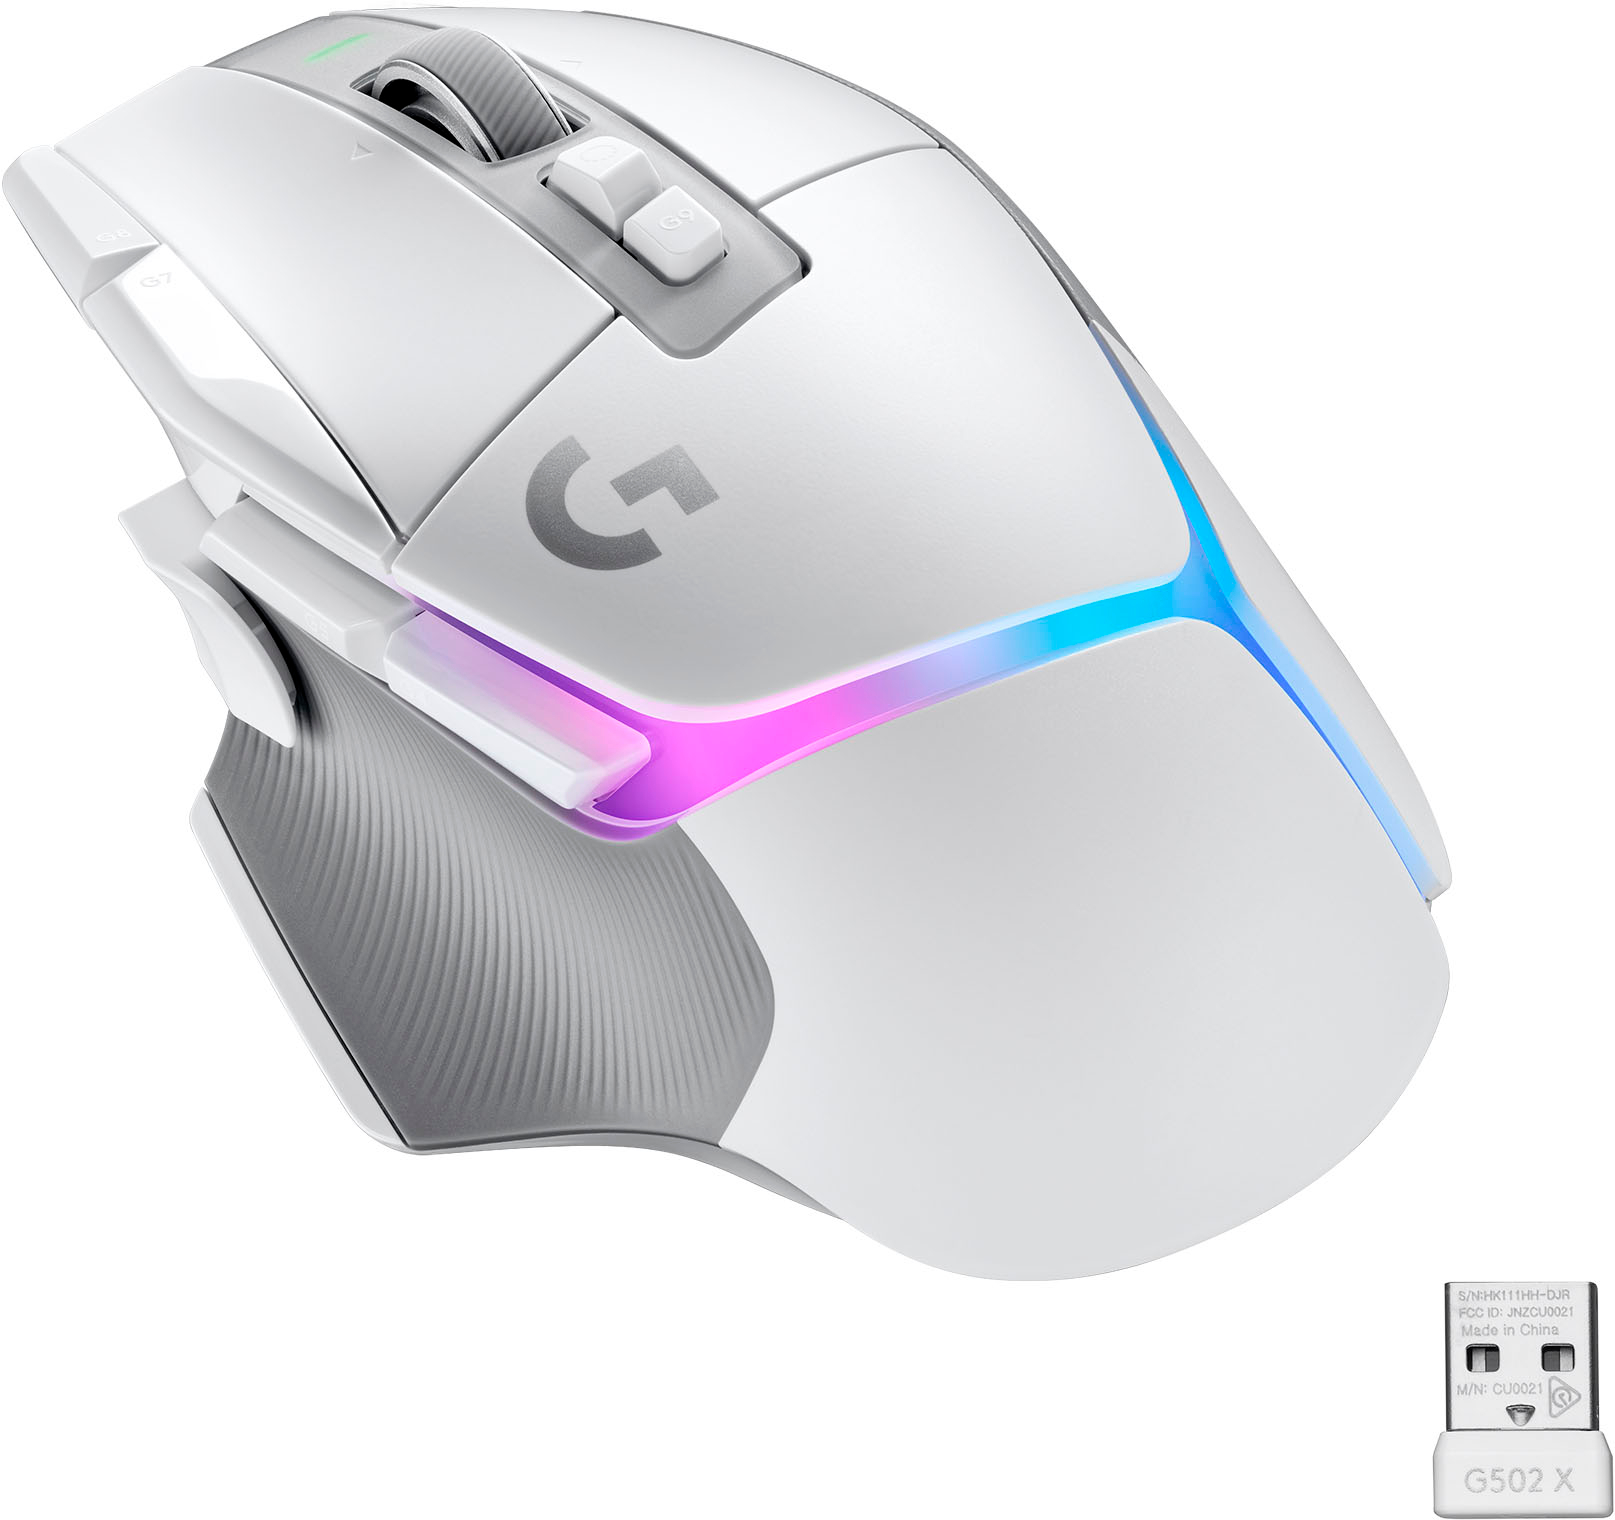 evaluerbare endelse Vidunderlig Logitech G502 X PLUS LIGHTSPEED Wireless Gaming Mouse with HERO 25K Sensor  White 910-006169 - Best Buy